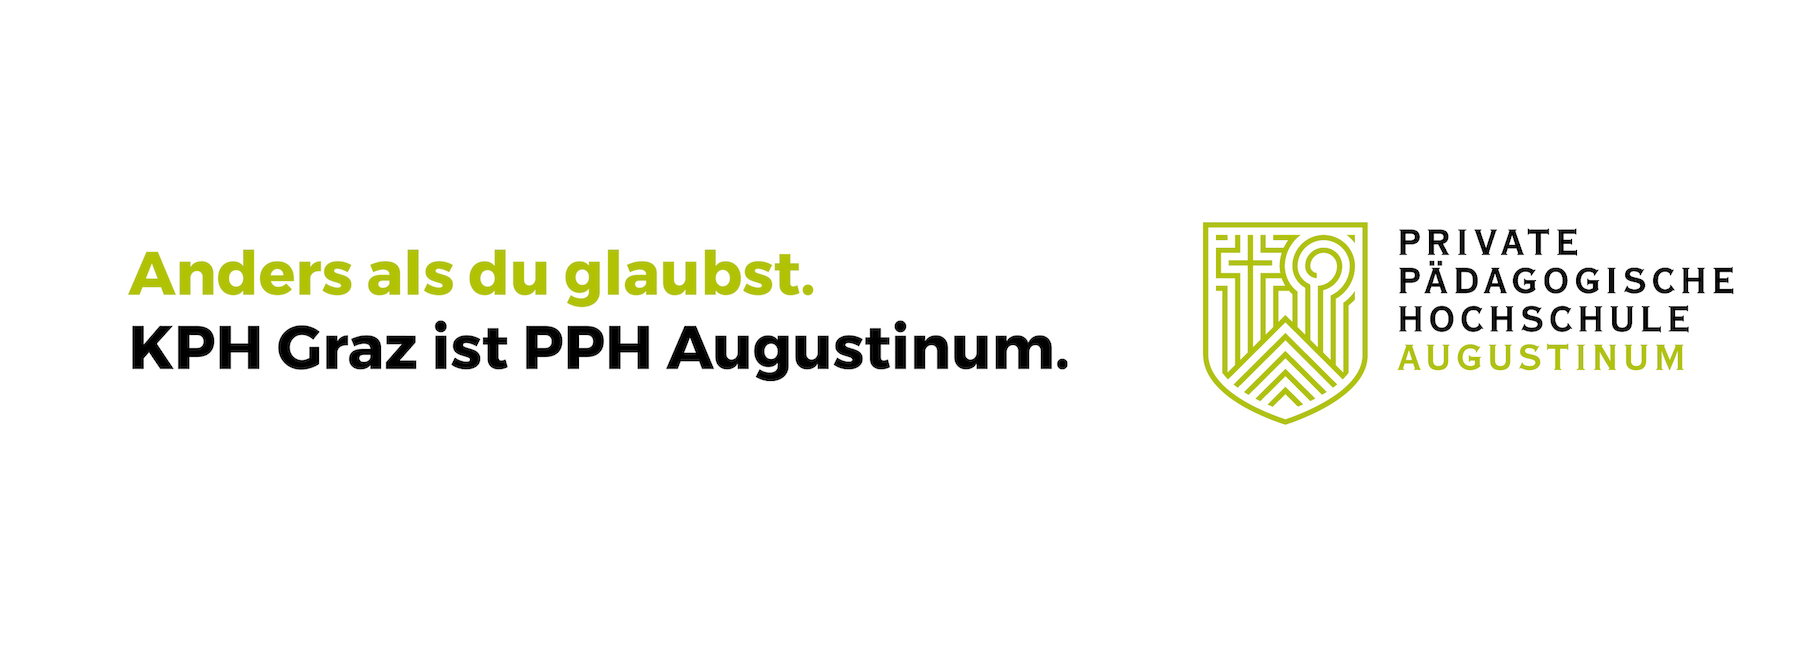 KPH Graz ist PPH Augustinum.